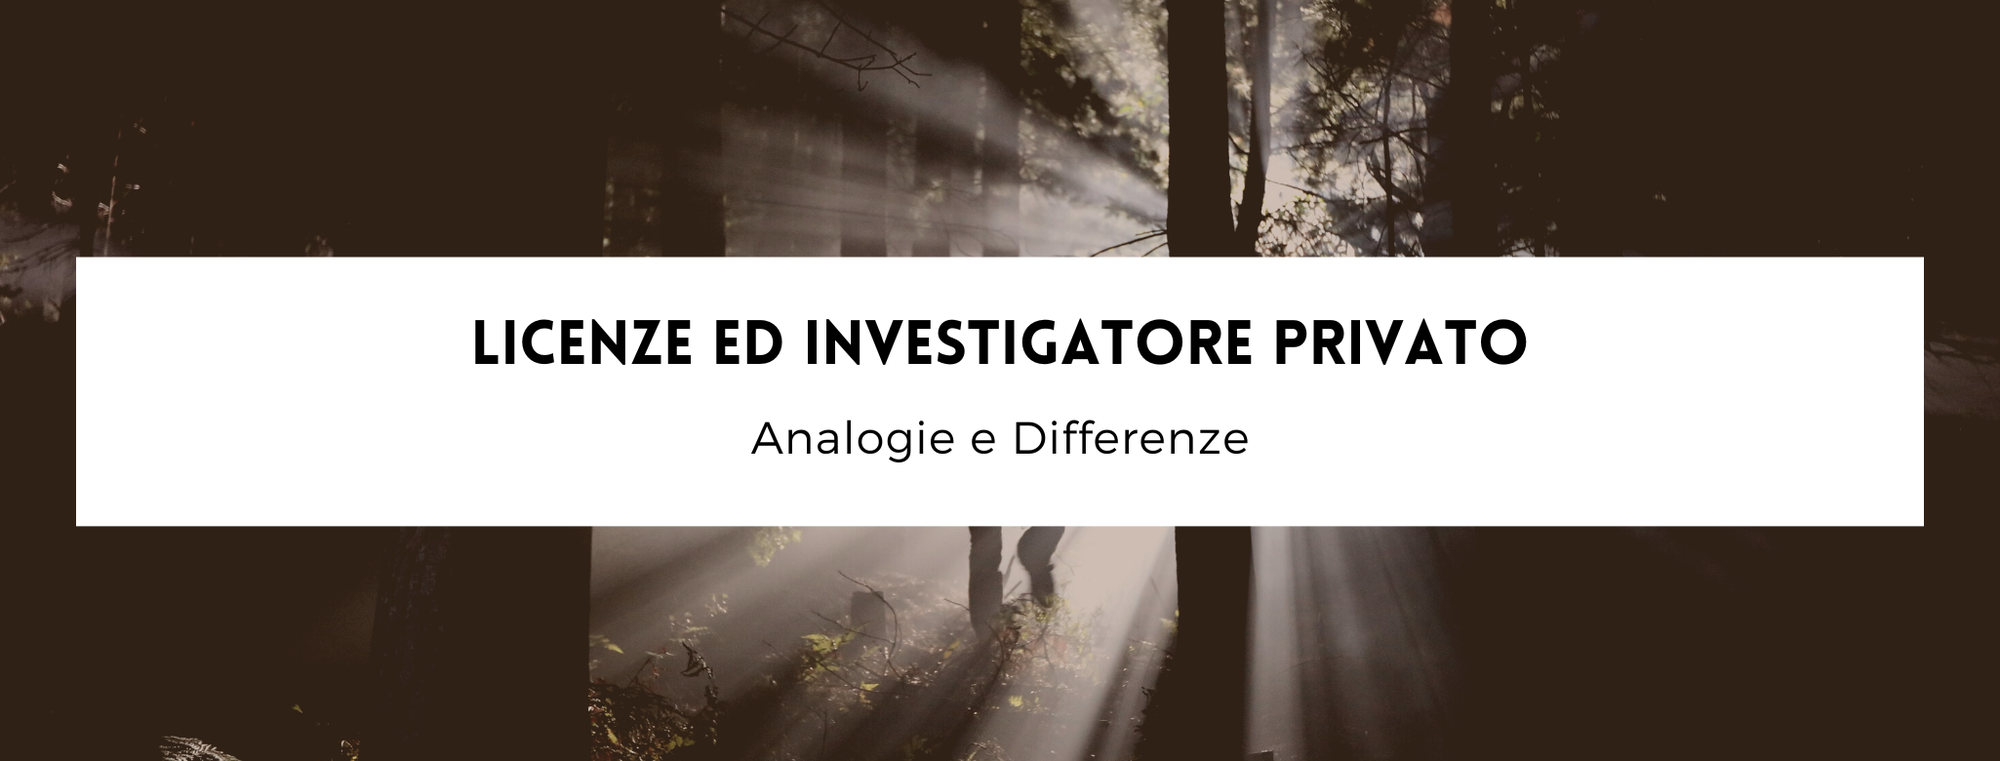 Licenze ed investigatore privato, analogie e differenze